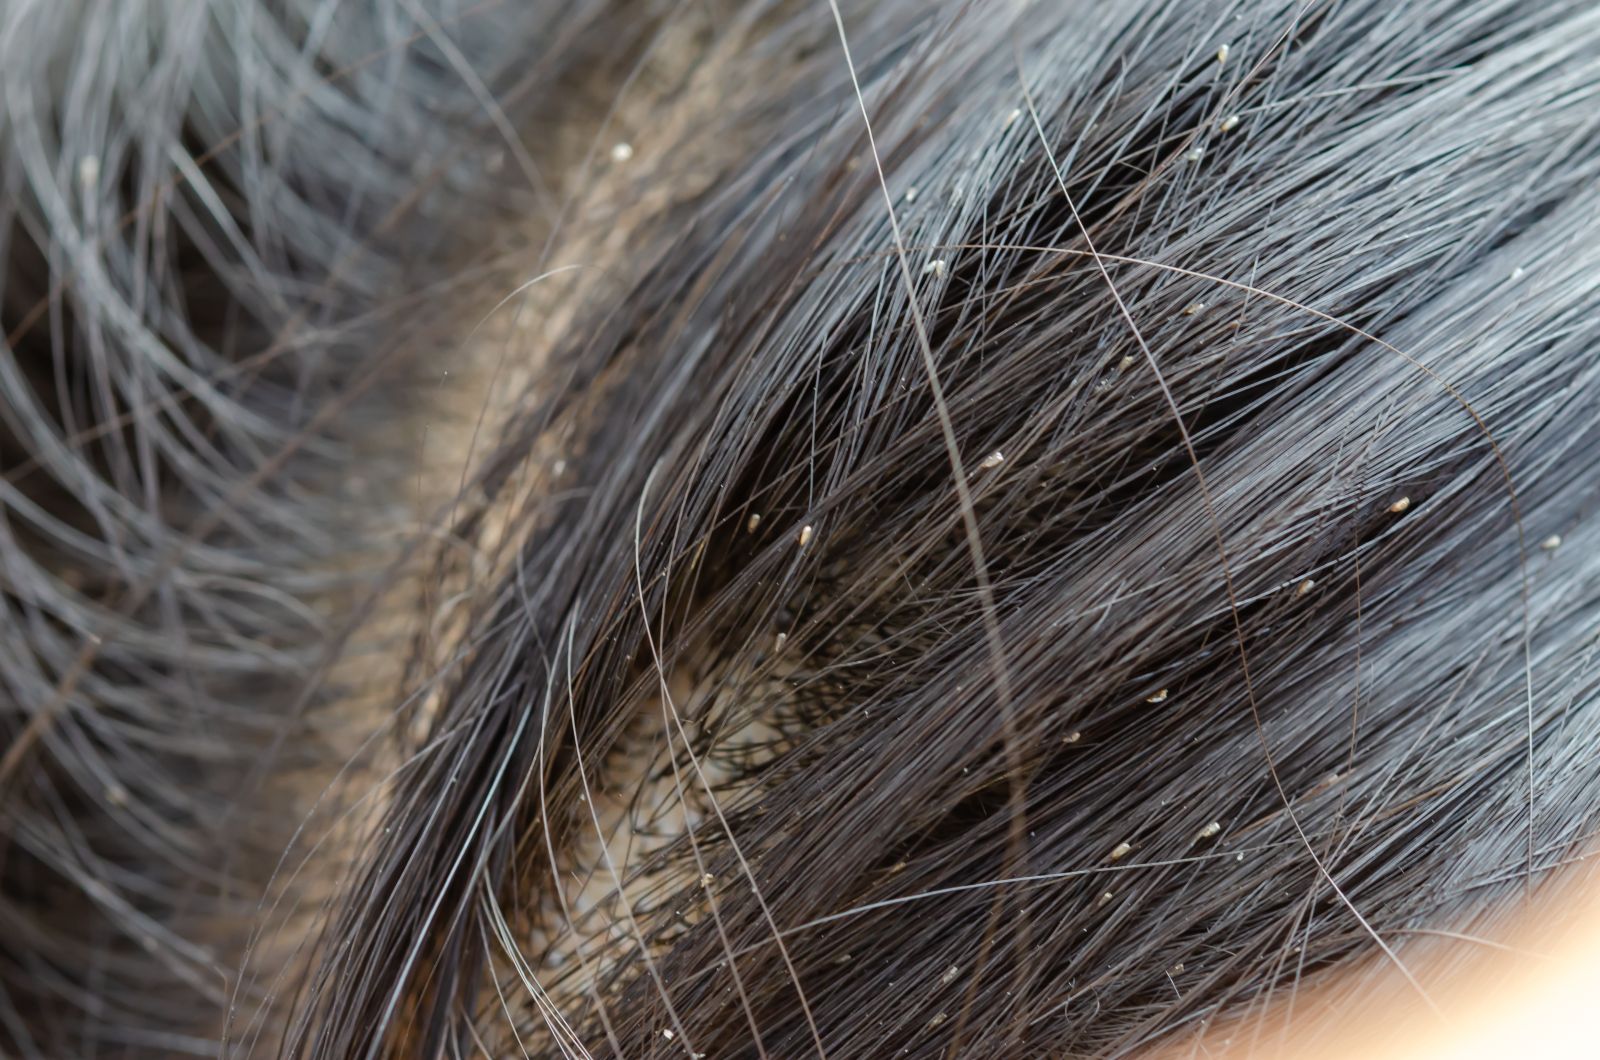 Як виглядають гниди на волоссі: фото